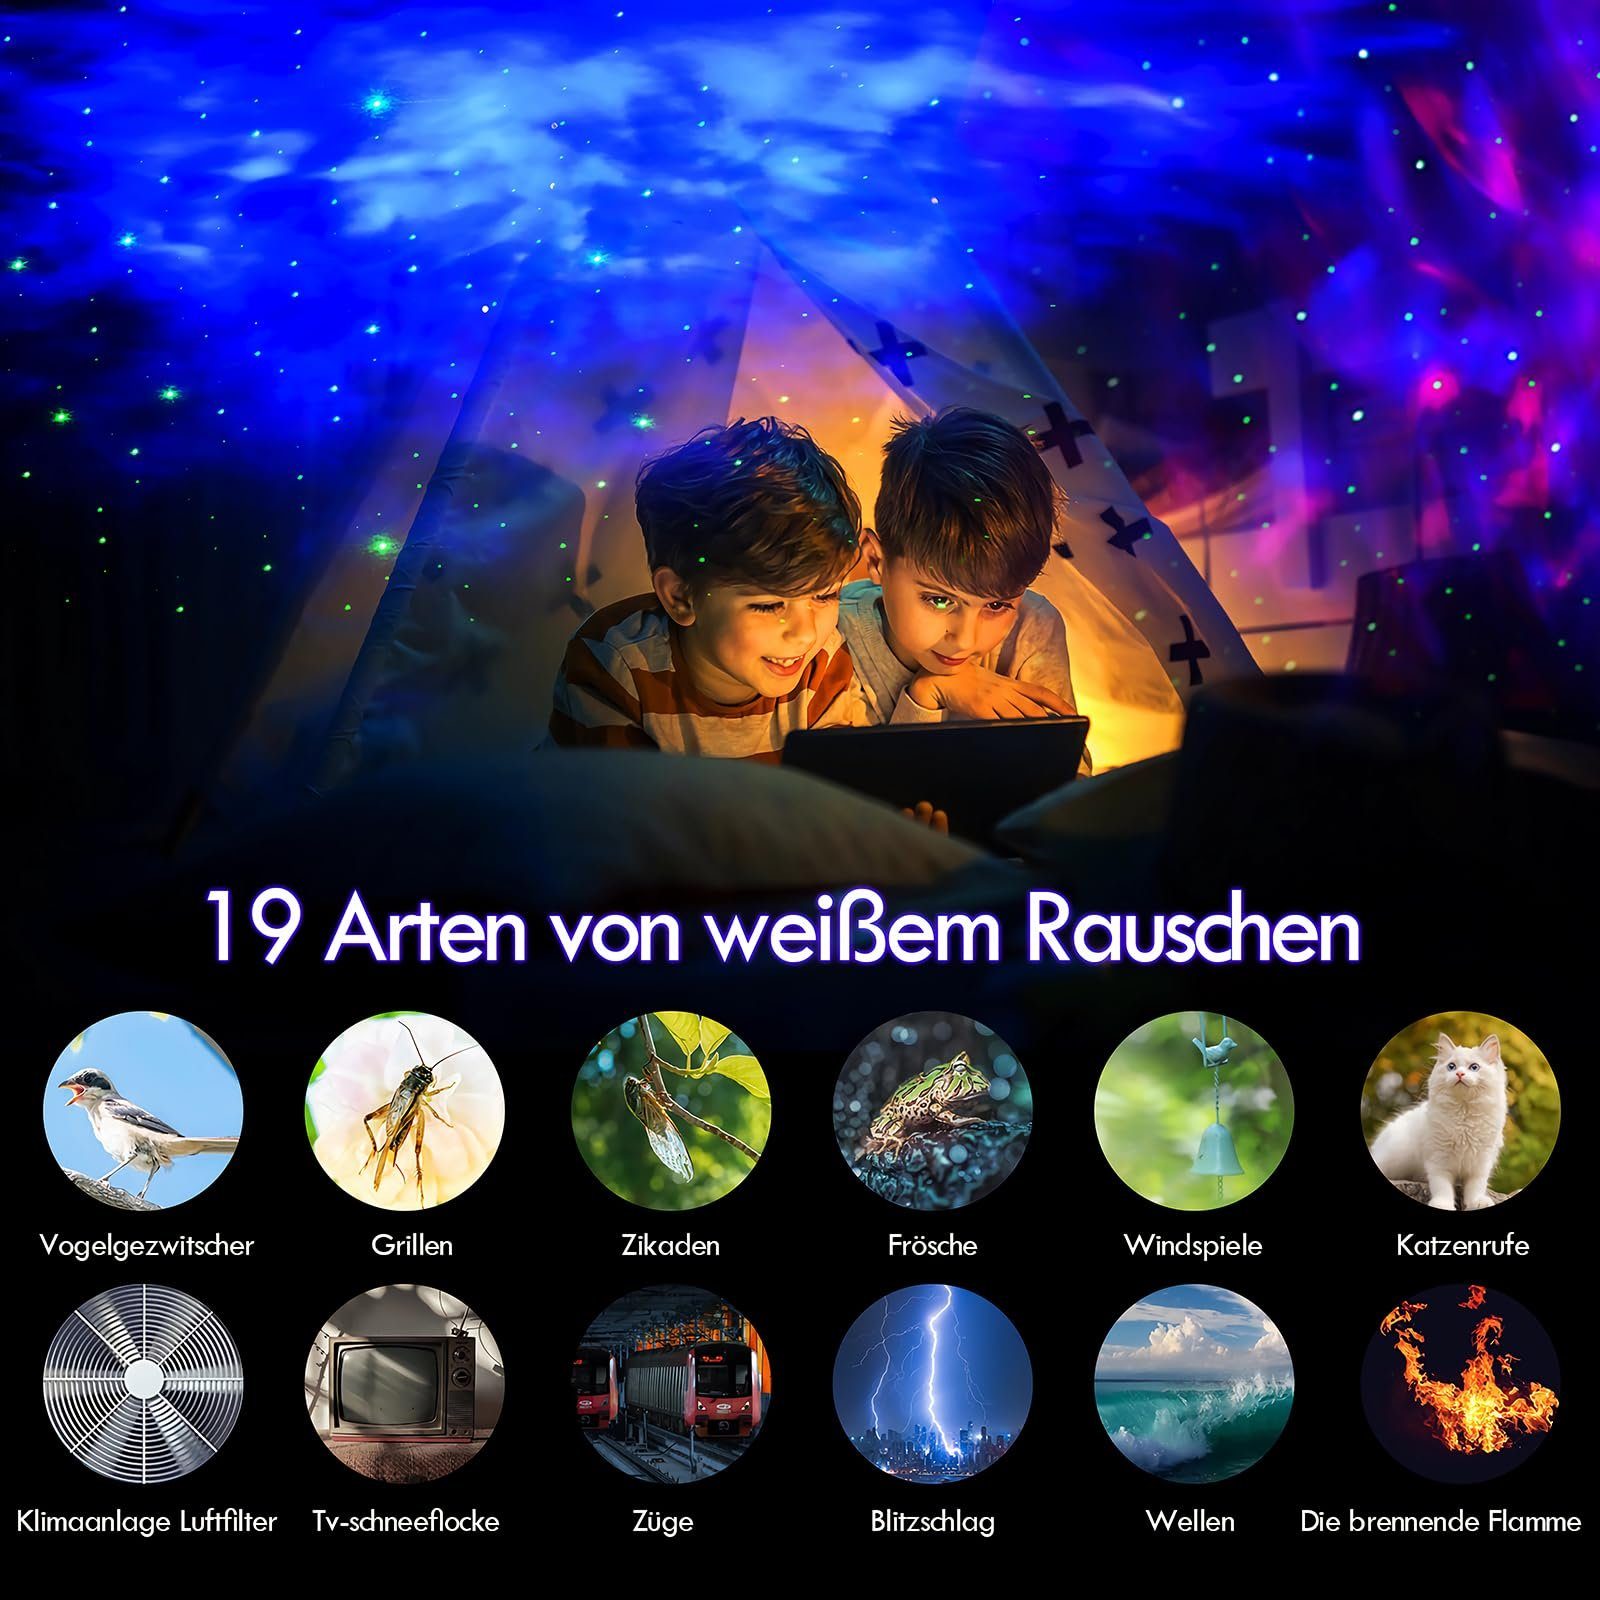 Powerwill LED-Sternenhimmel Sternenhimmel projektor,Mit Musikplayer,Nachtlicht,Aurora-Effekt, Erwachsene Kinder Sternen LED Weiße wechselbar, Rauschen, mit Polarlicht Fernbedienung,19 Deko Timing und Nachtlicht für